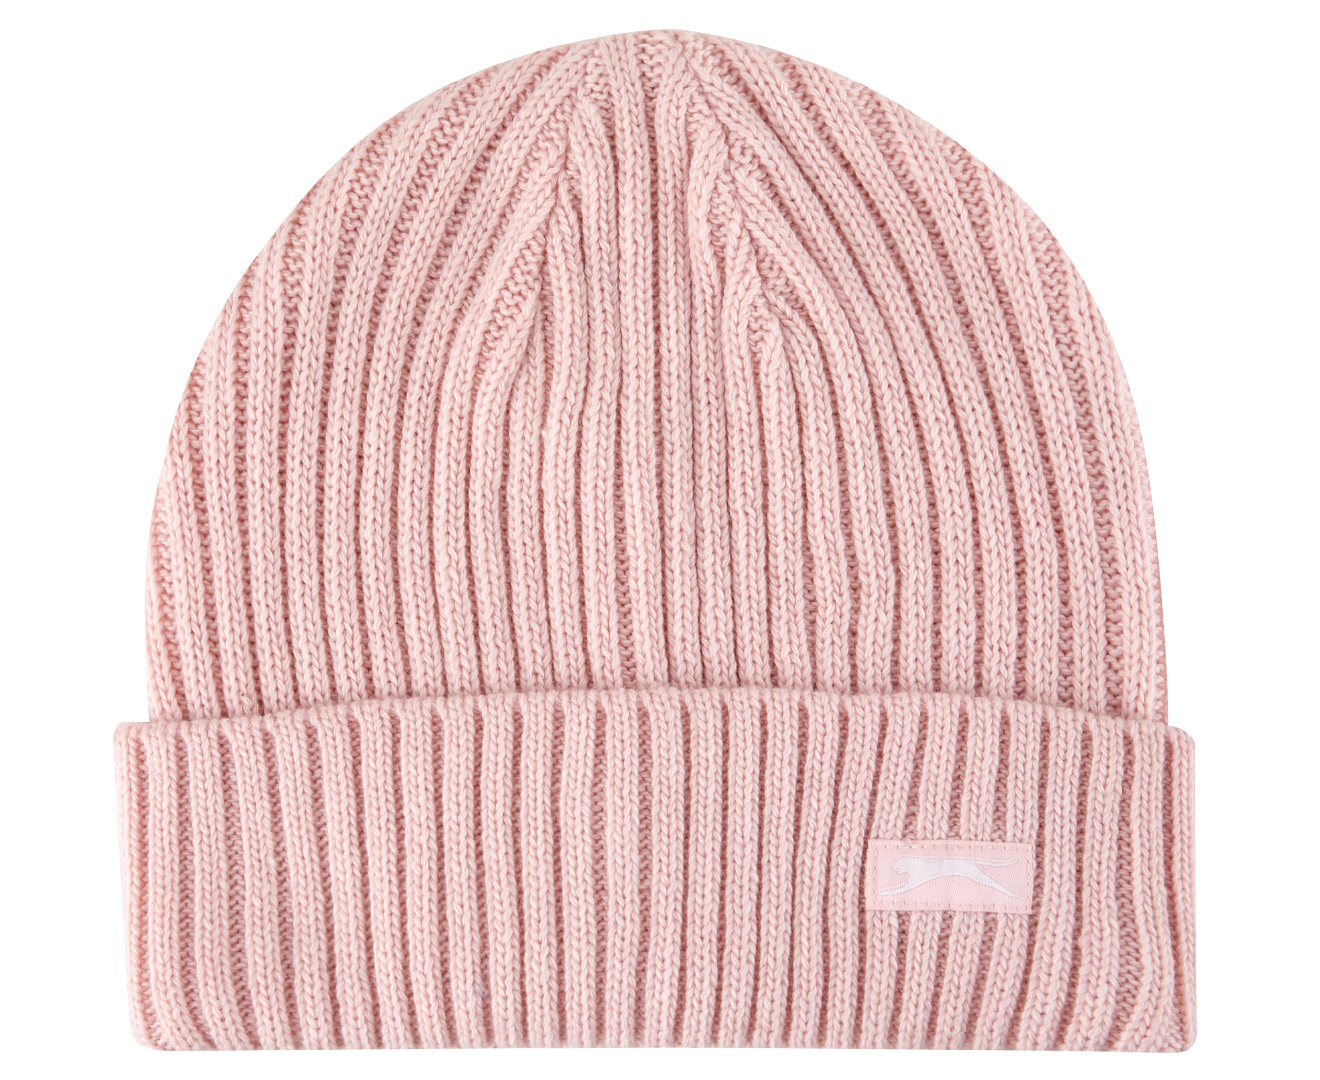 Slazenger Knit Beanie - Pink | Catch.com.au